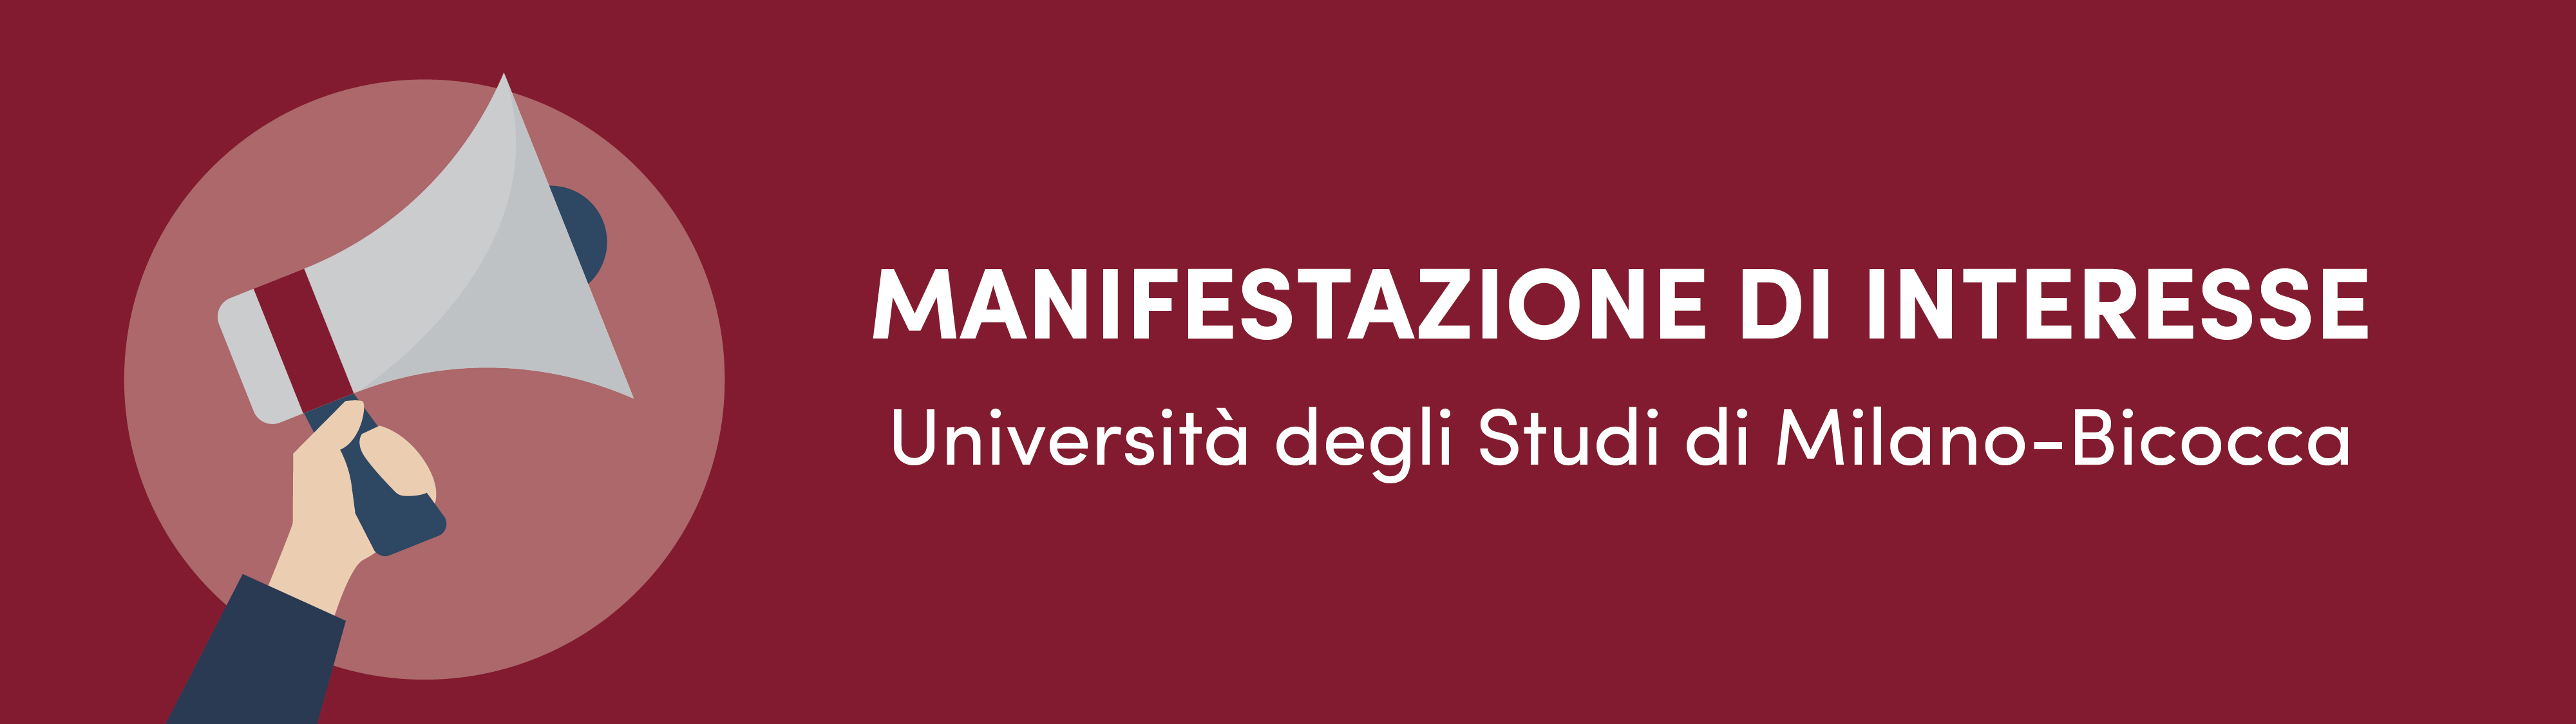 MANIFESTAZIONE_DI_INTERESSE